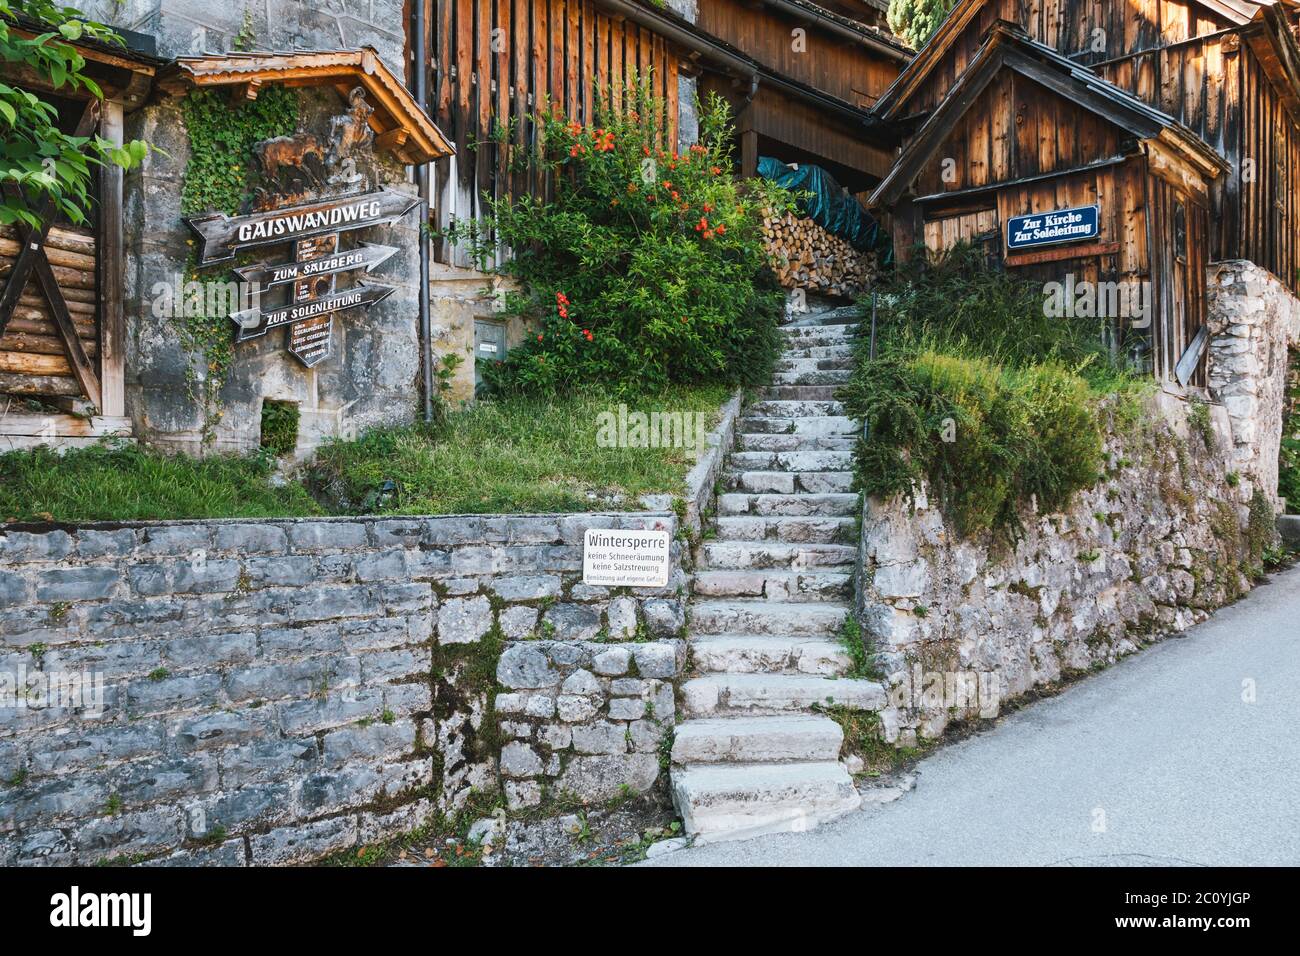 Hallstatt, Austria - Giugno 12 2020: Gaiswandweg un famoso Sentiero escursionistico a Hallstatt, alta Austria che conduce al Salzberg e Solenleitung Foto Stock